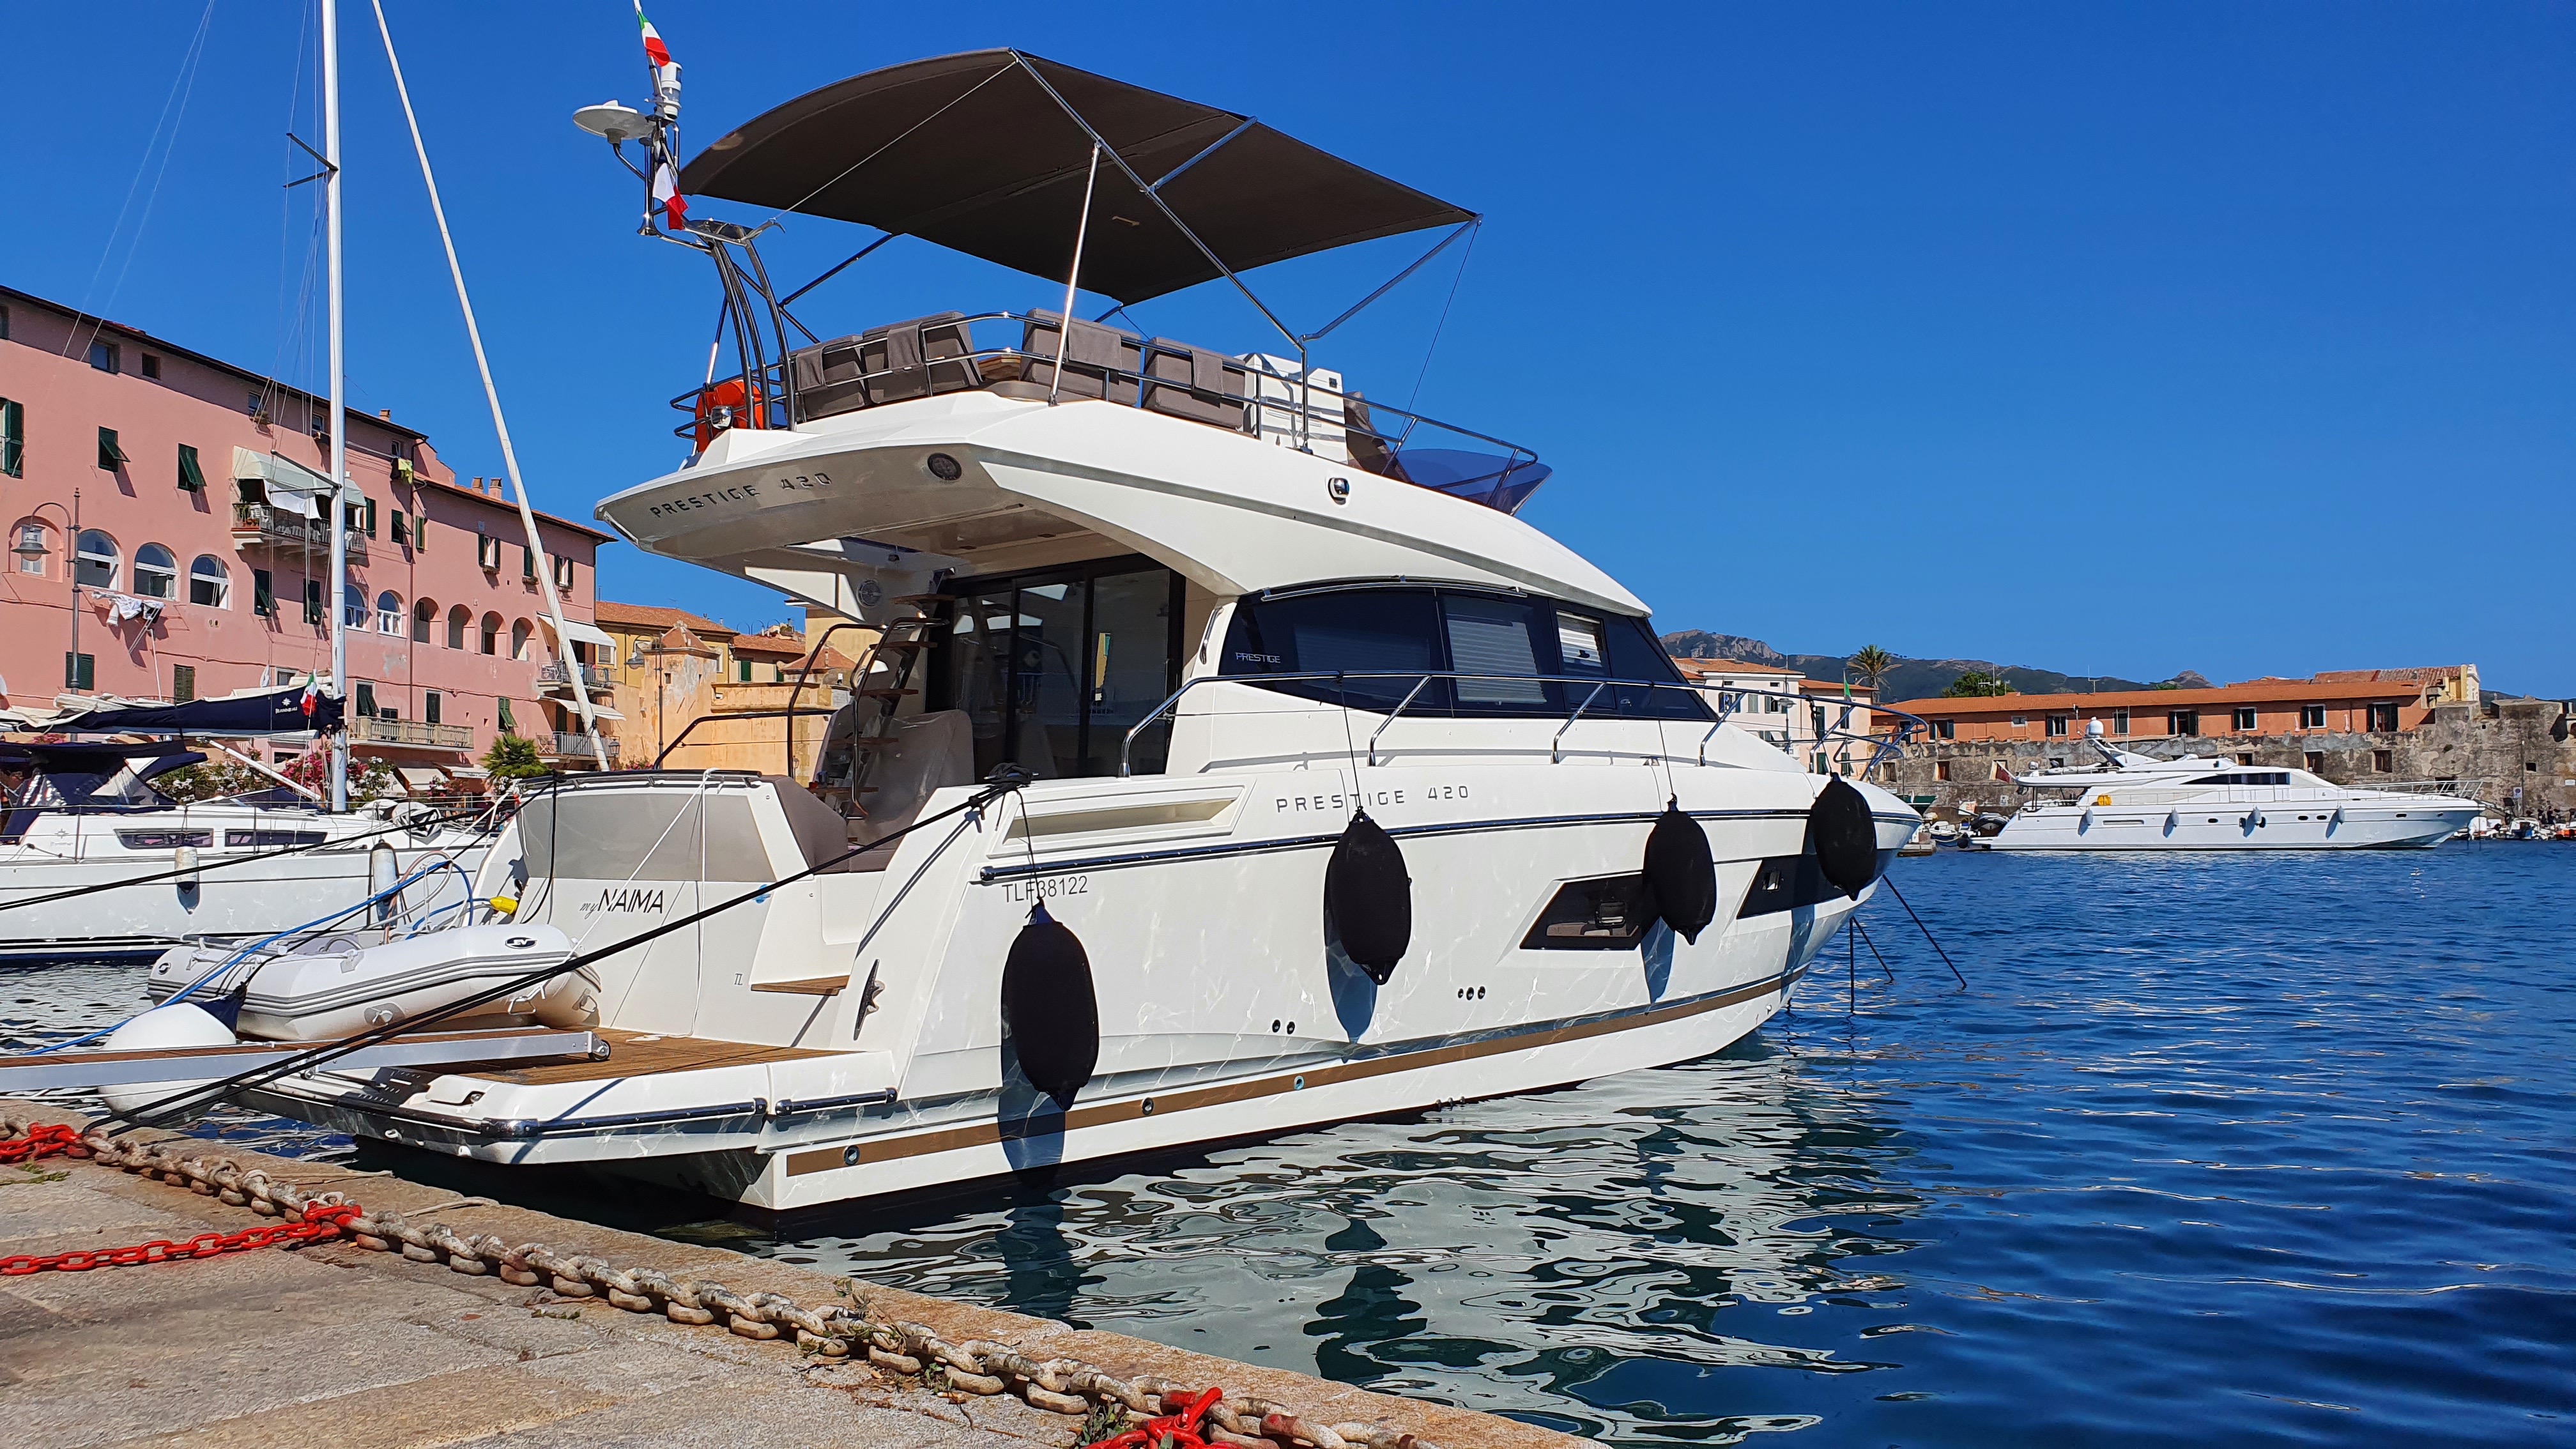 Prestige 420 Fly - Motor Boat Charter Sardinia & Boat hire in Italy Sardinia Costa Smeralda Cannigione Cannigione 4